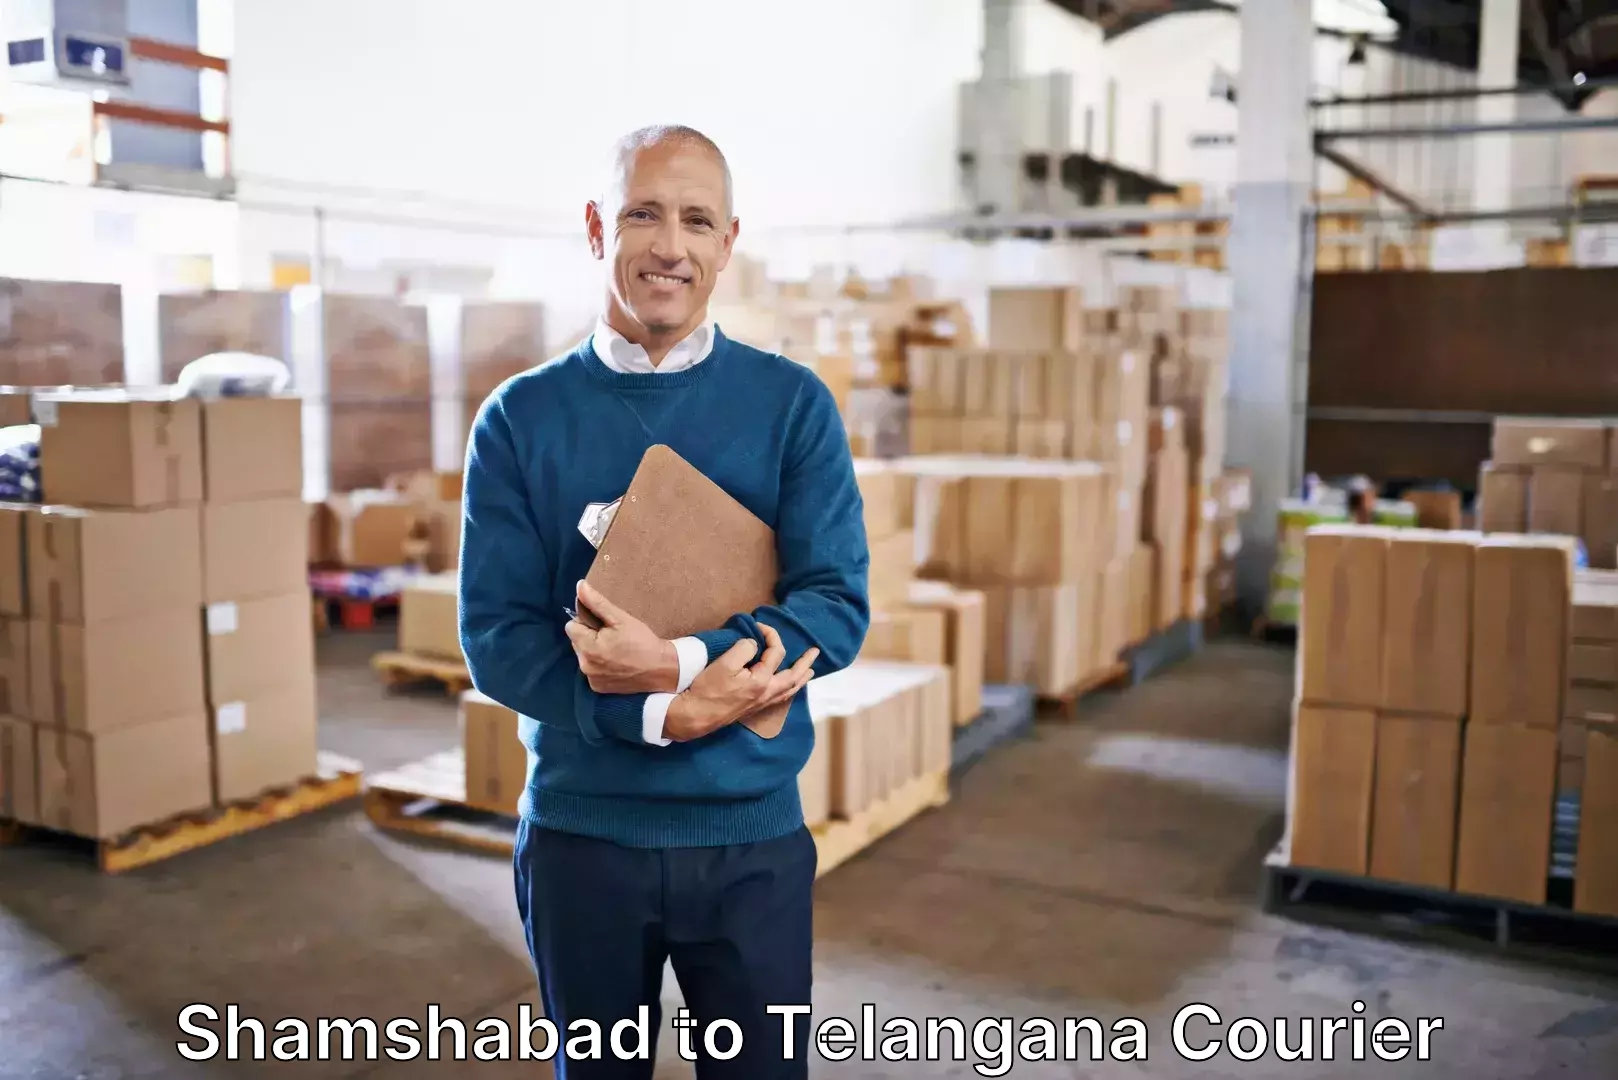 Luggage shipment tracking Shamshabad to Trimulgherry